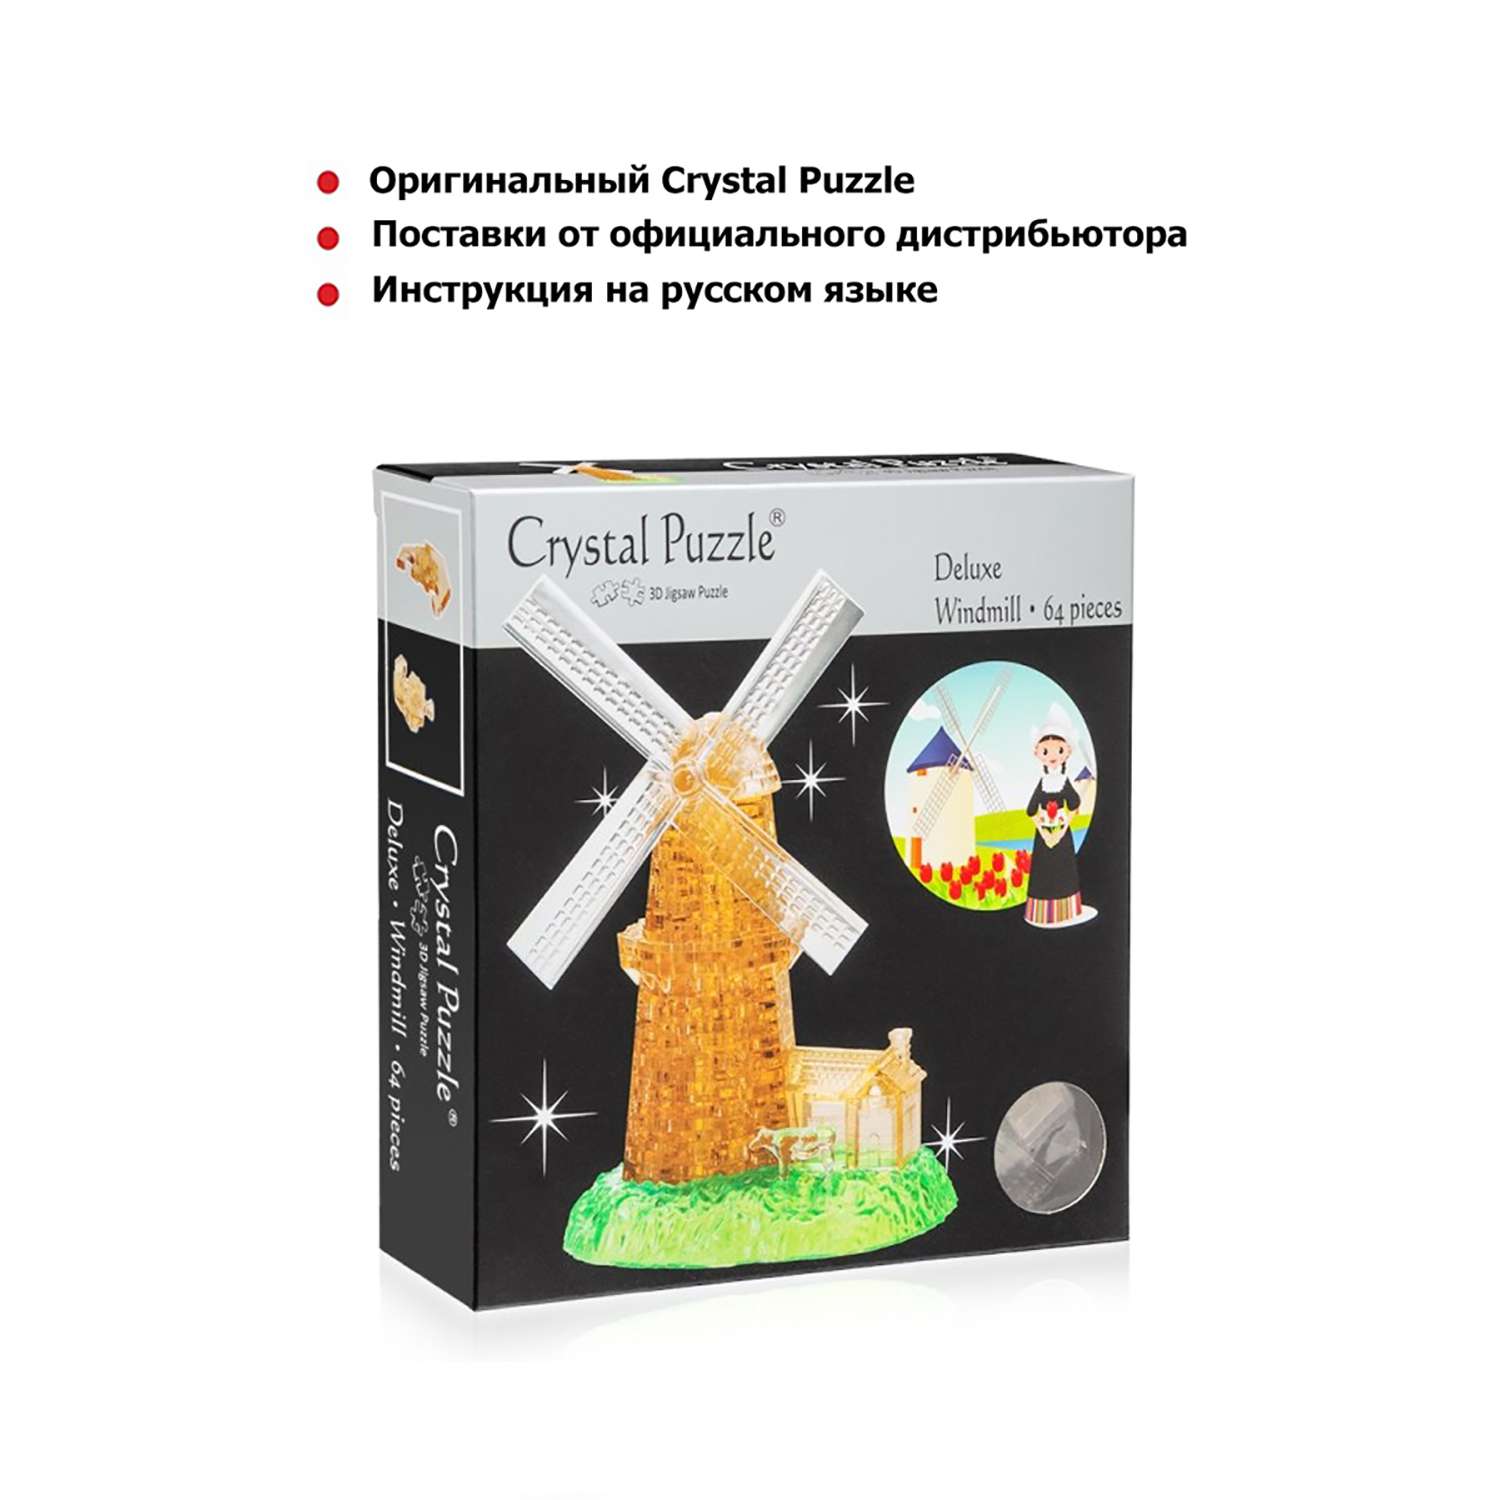 3D-пазл Crystal Puzzle IQ игра для детей кристальная Мельница 64 детали - фото 5